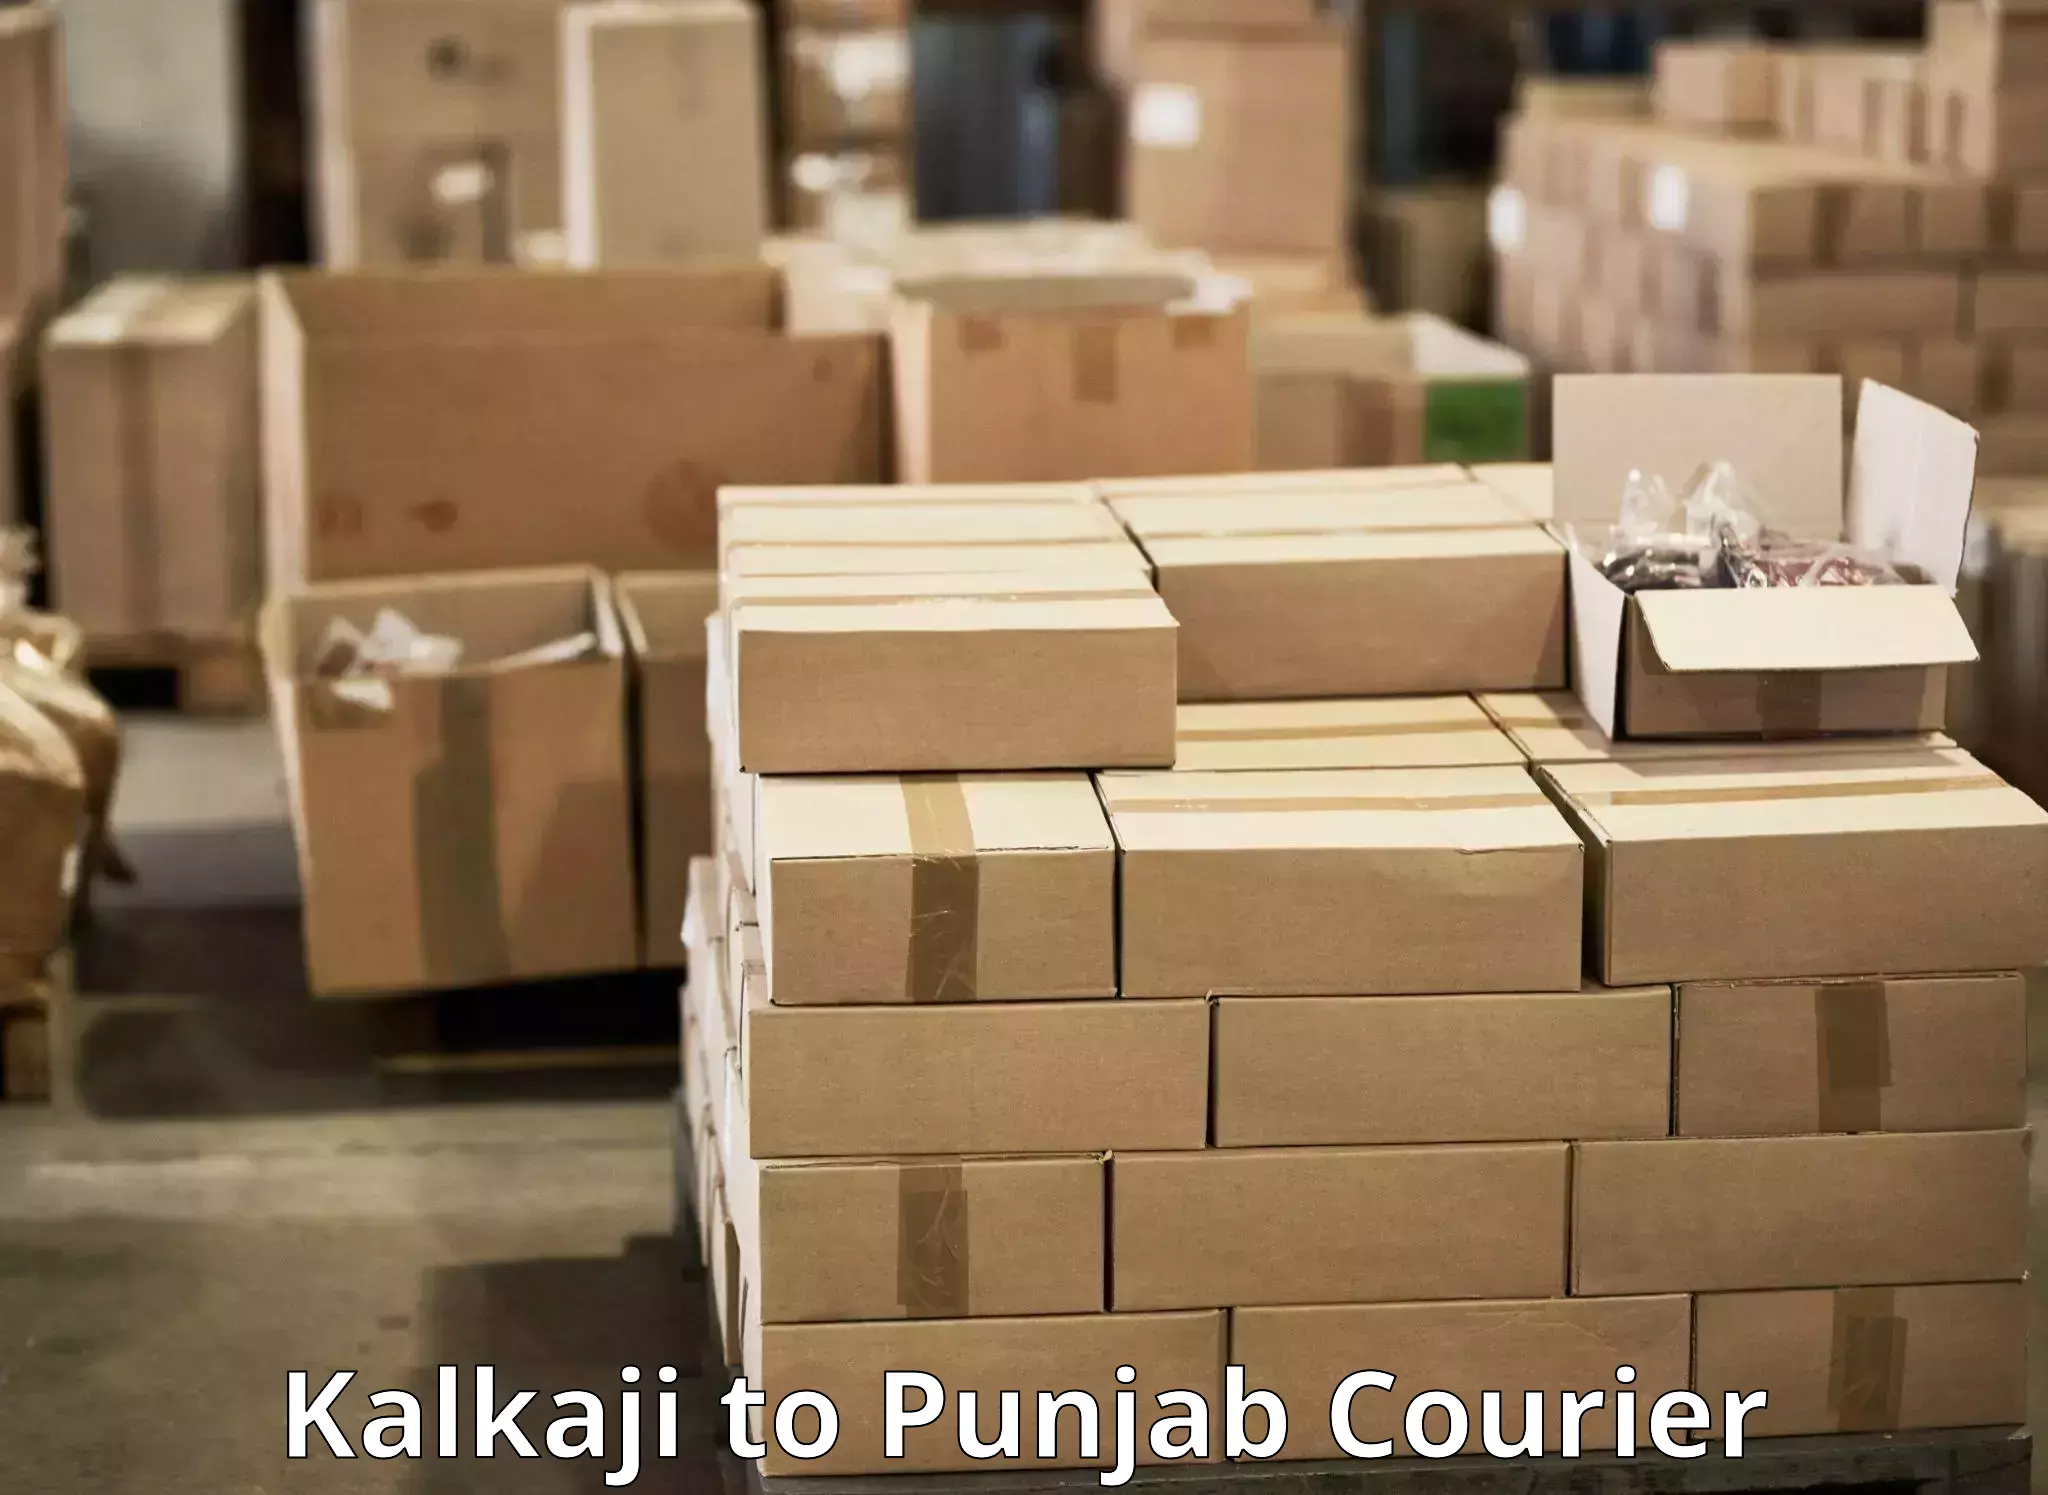 User-friendly courier app Kalkaji to Anandpur Sahib